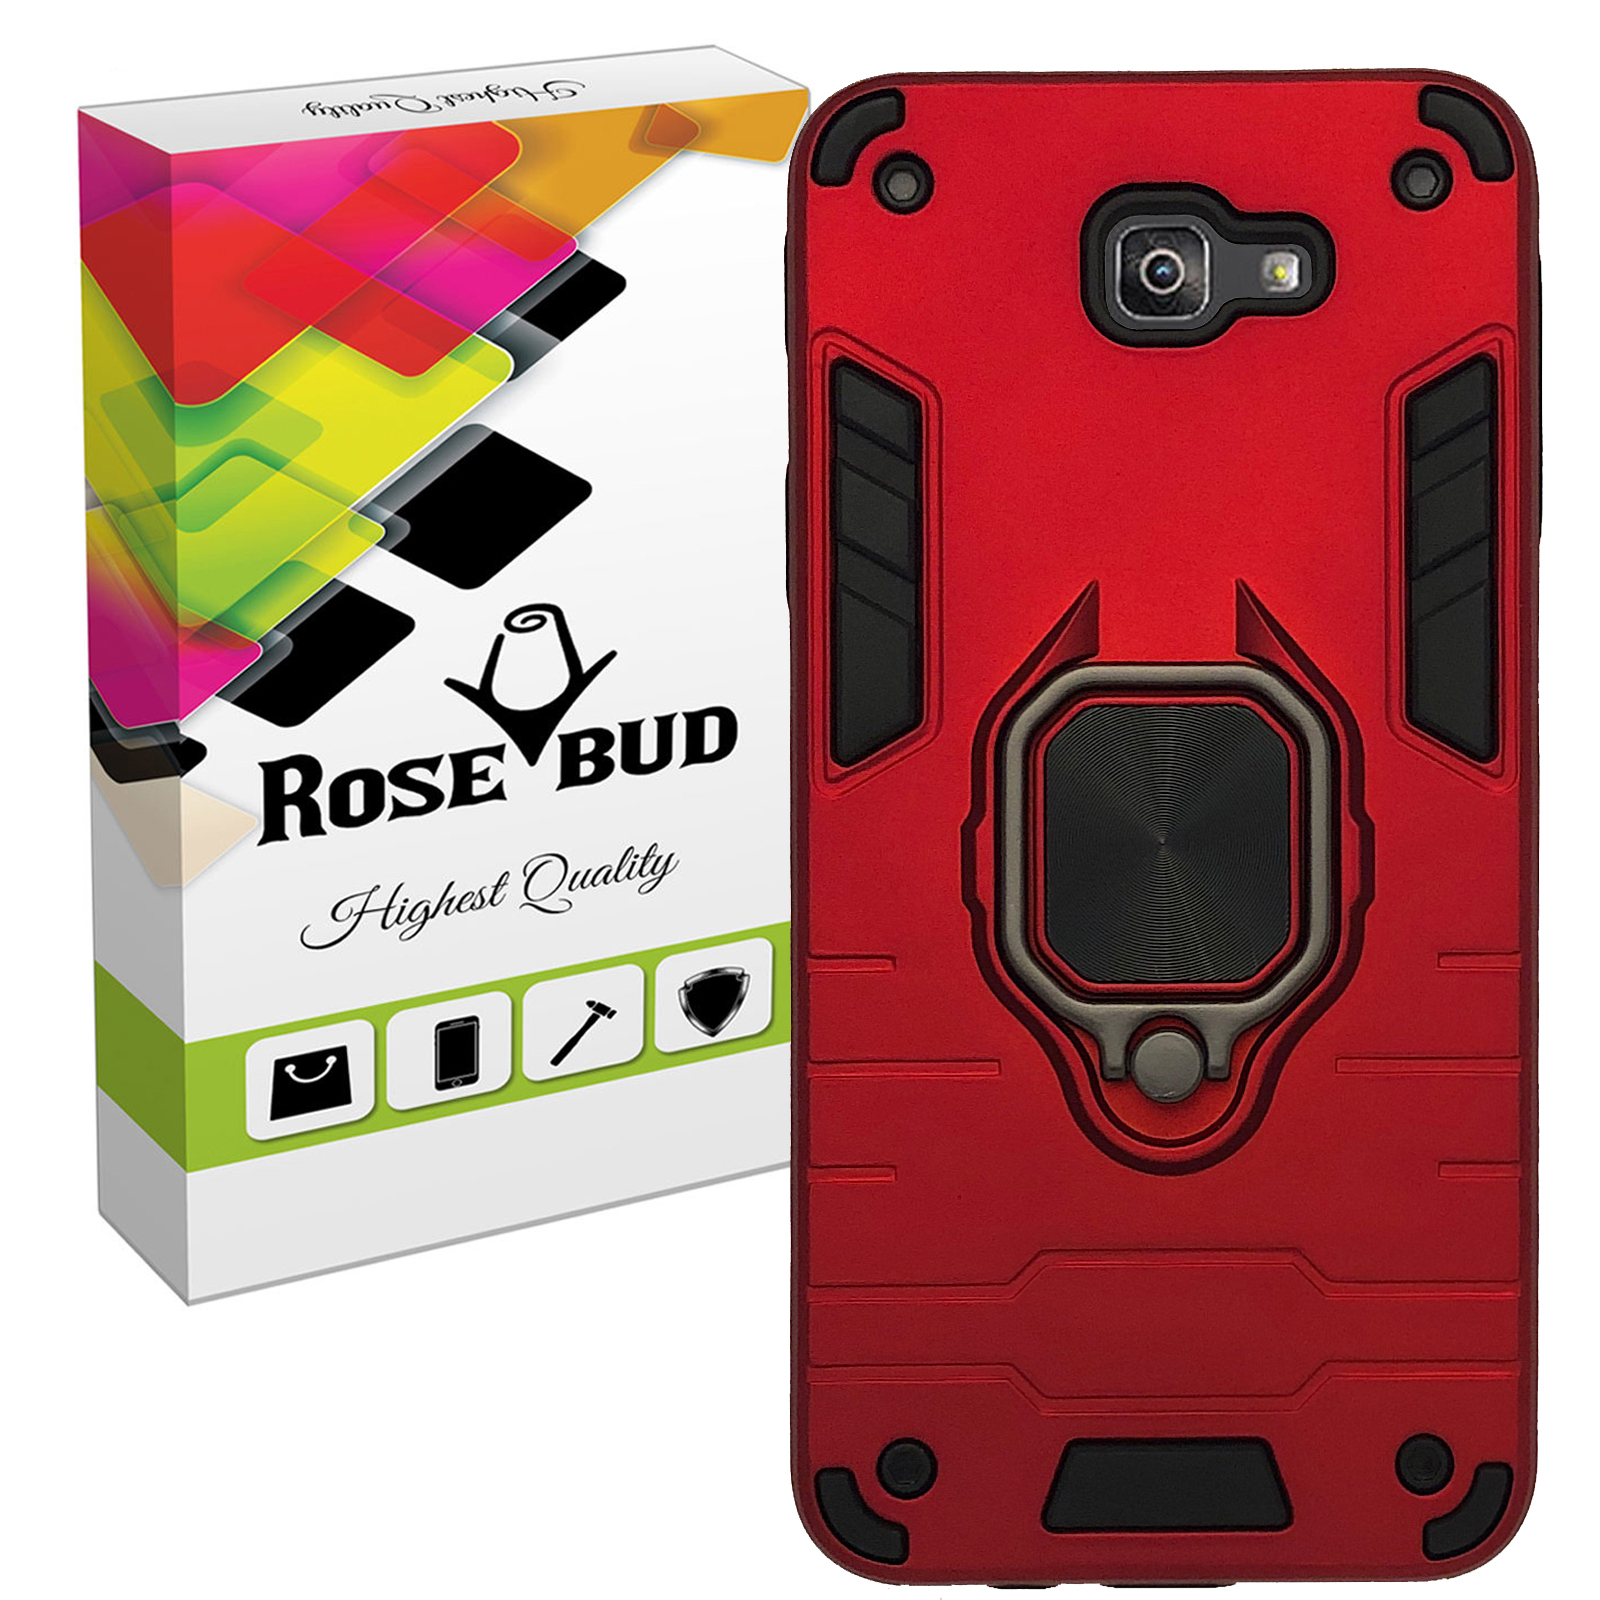 نقد و بررسی کاور رزباد مدل Rosa007 مناسب برای گوشی موبایل سامسونگ Galaxy J4 Plus / J4 Core توسط خریداران